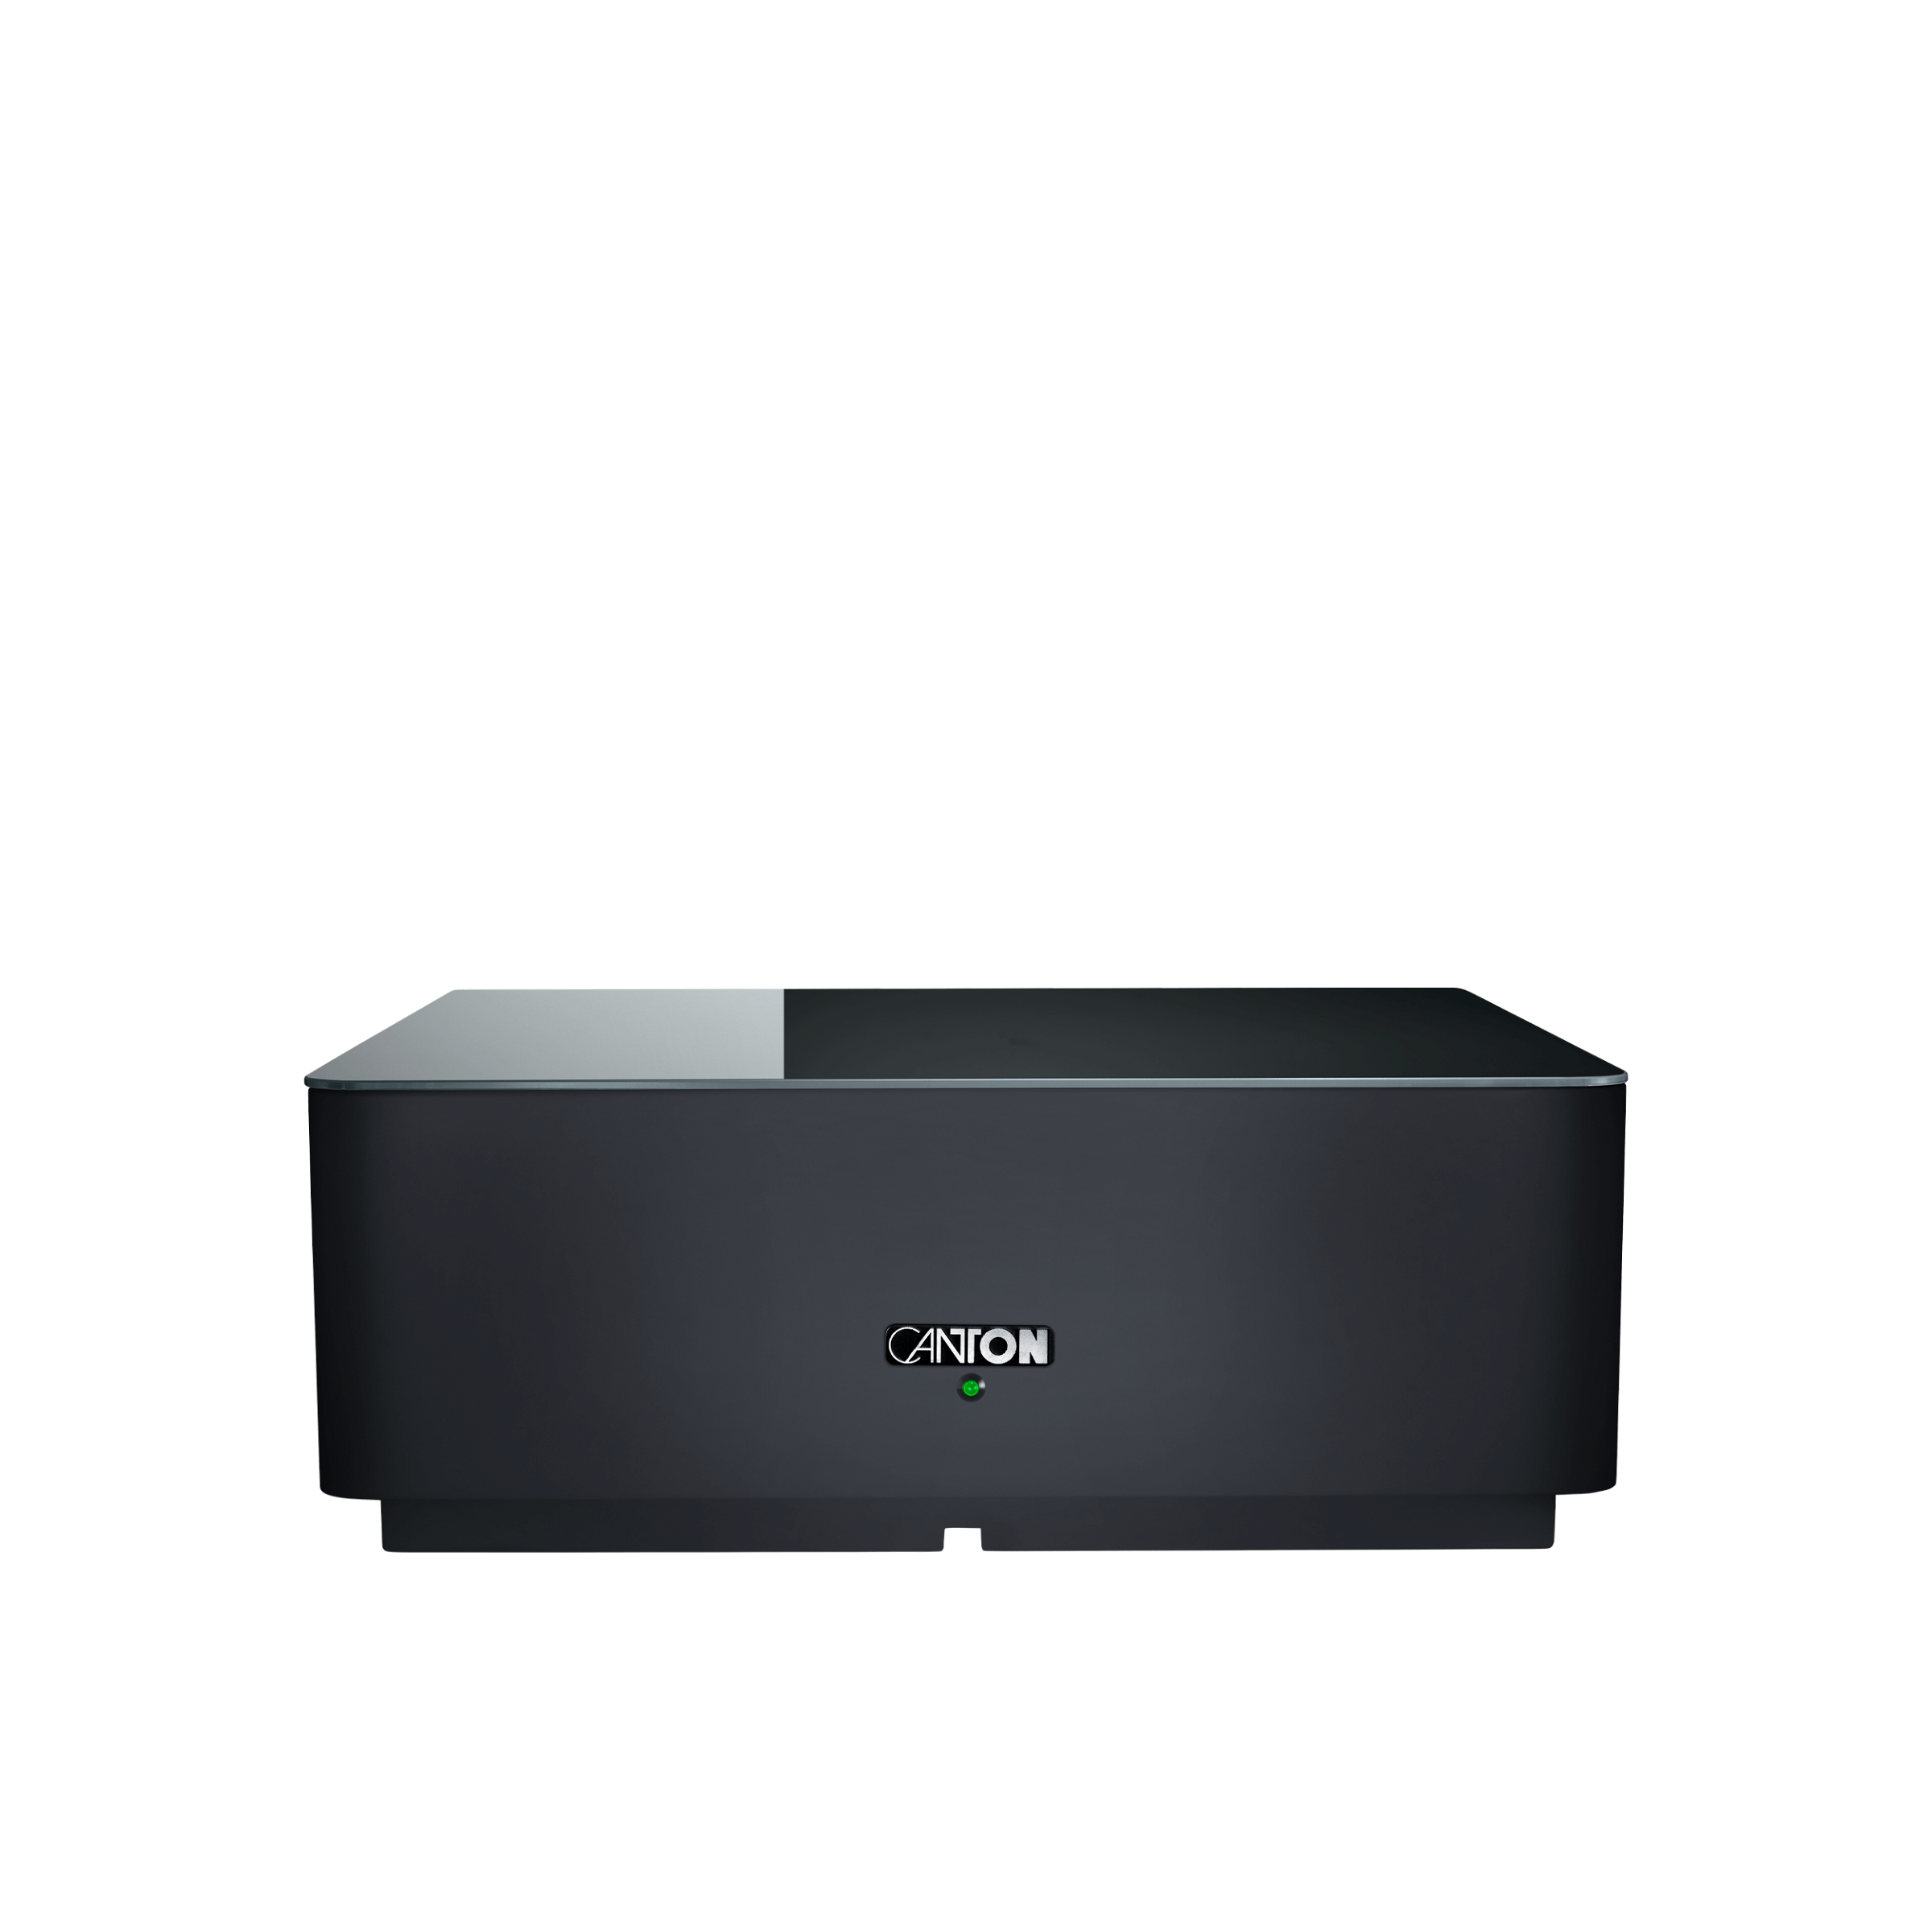 Sound M Premium Surround Set mit Smart Sub 10